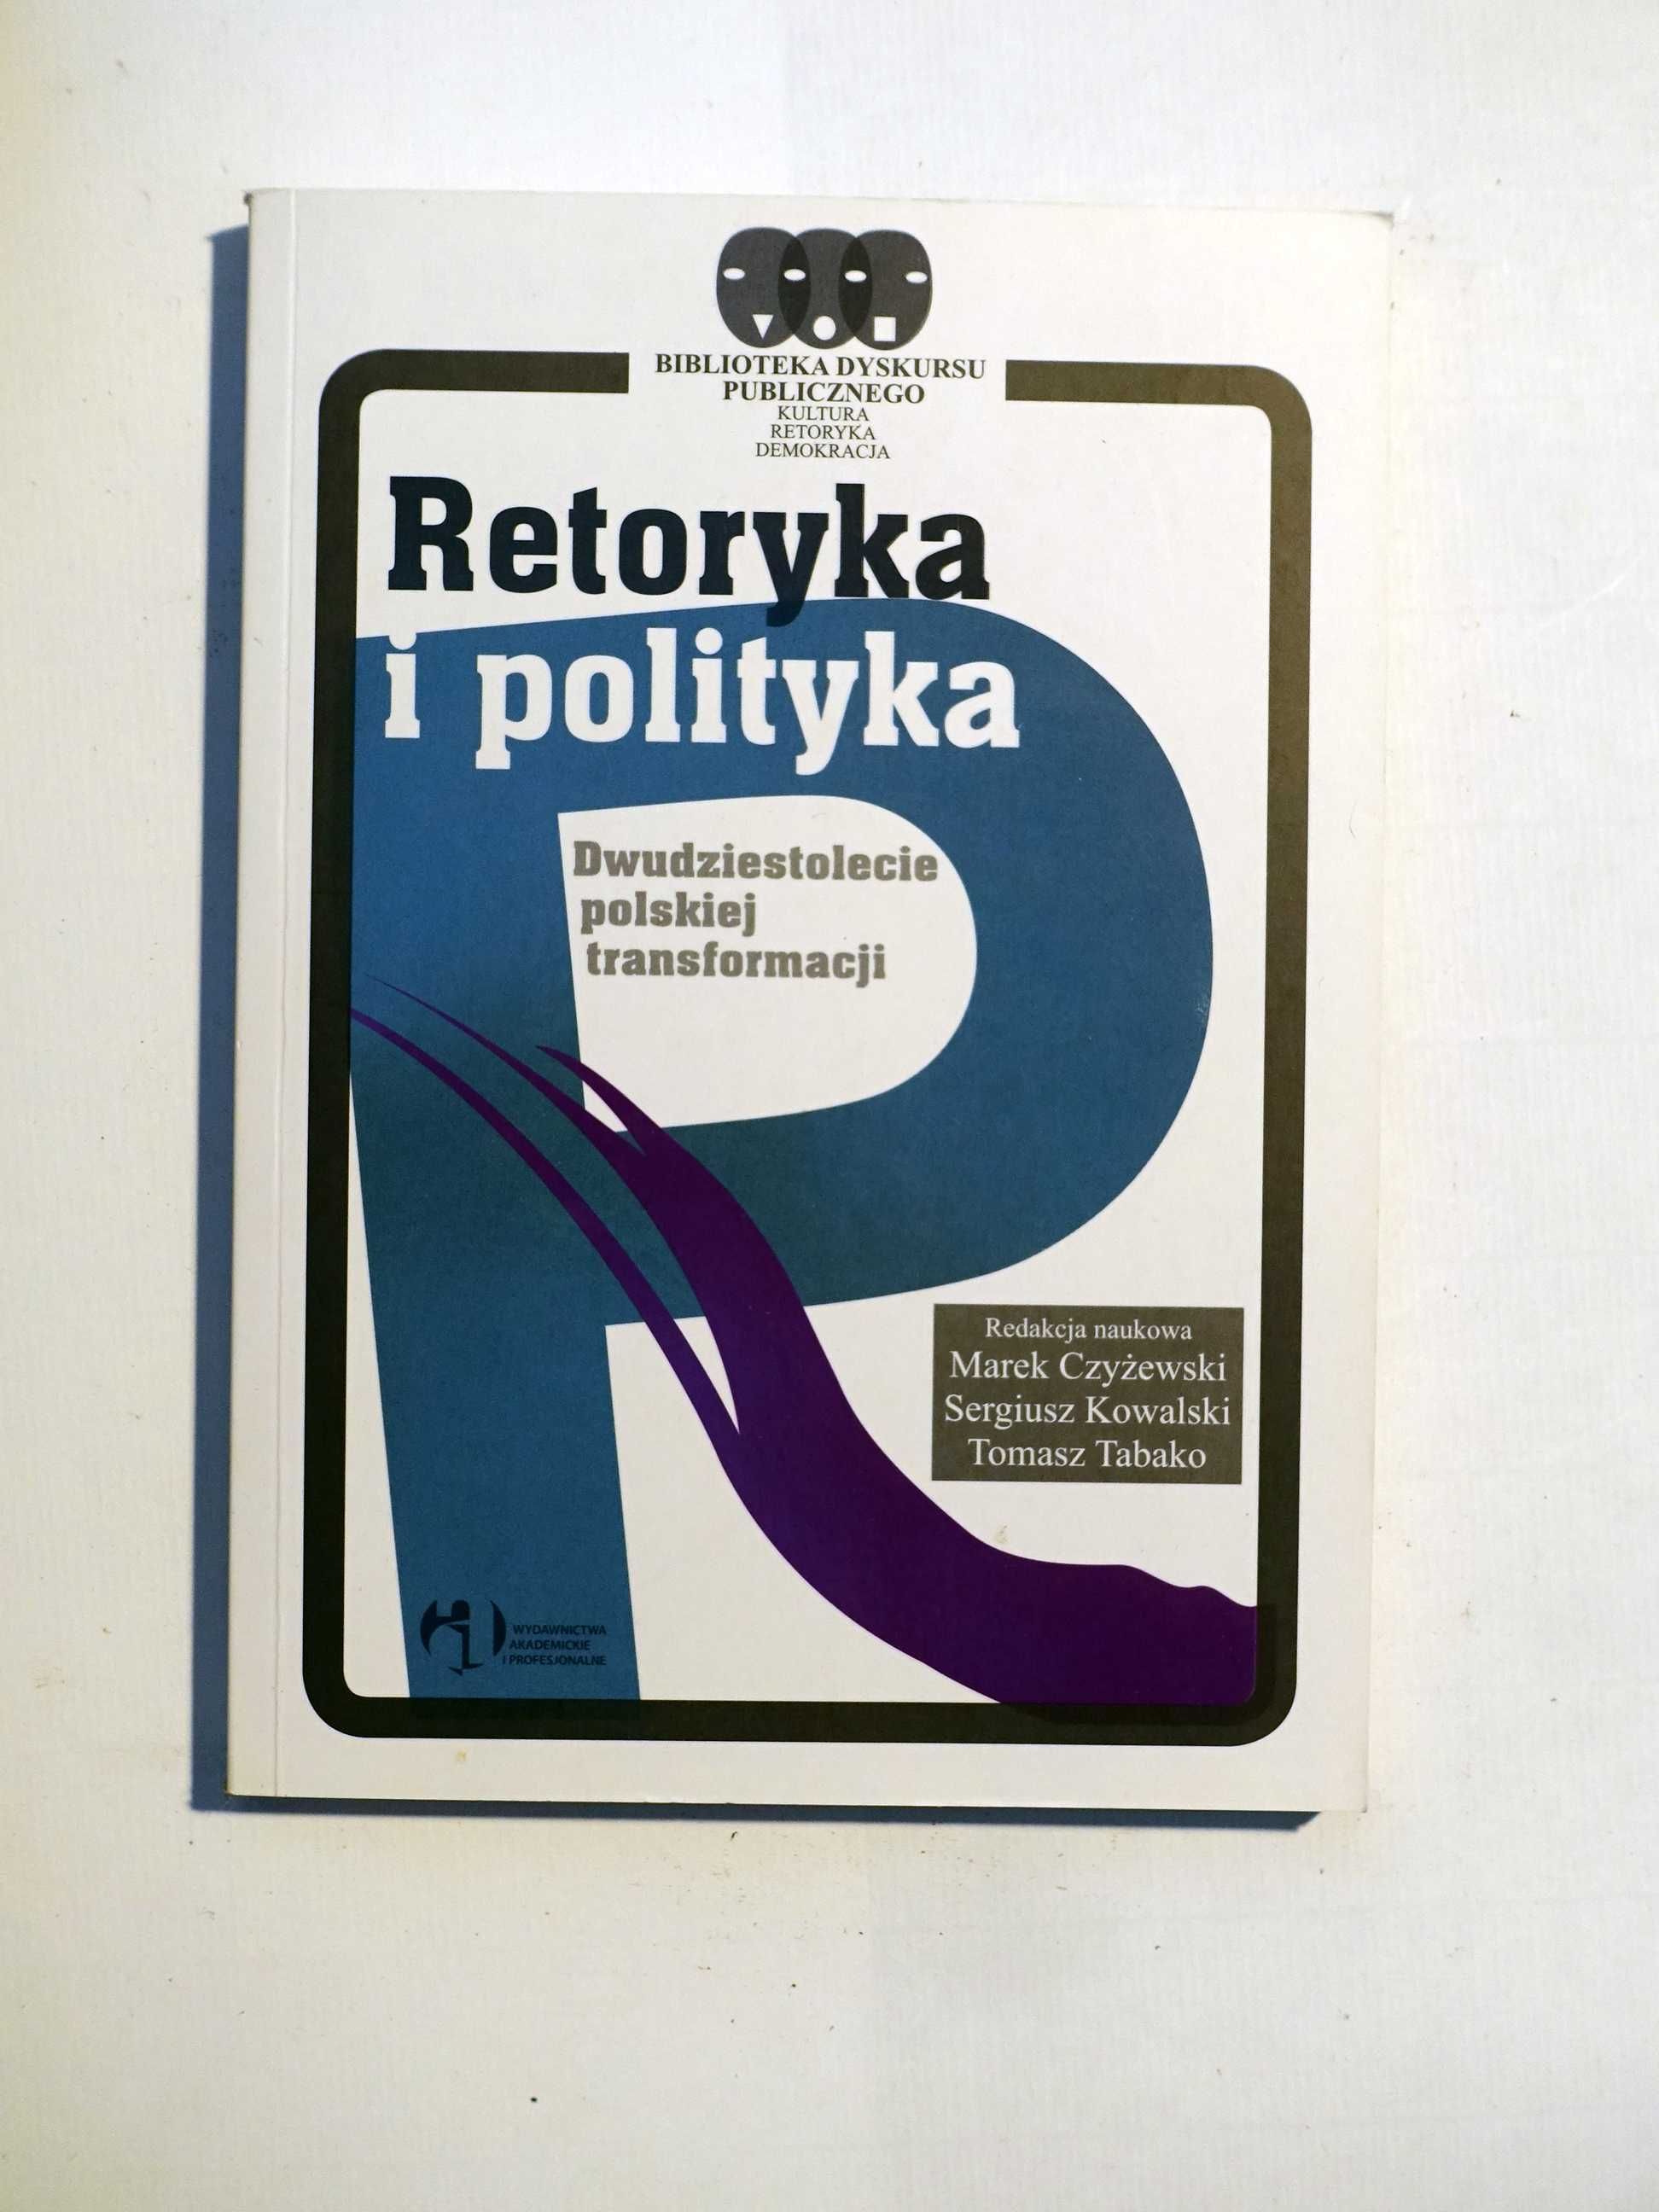 Marek Czyżewski "Retoryka i polityka"